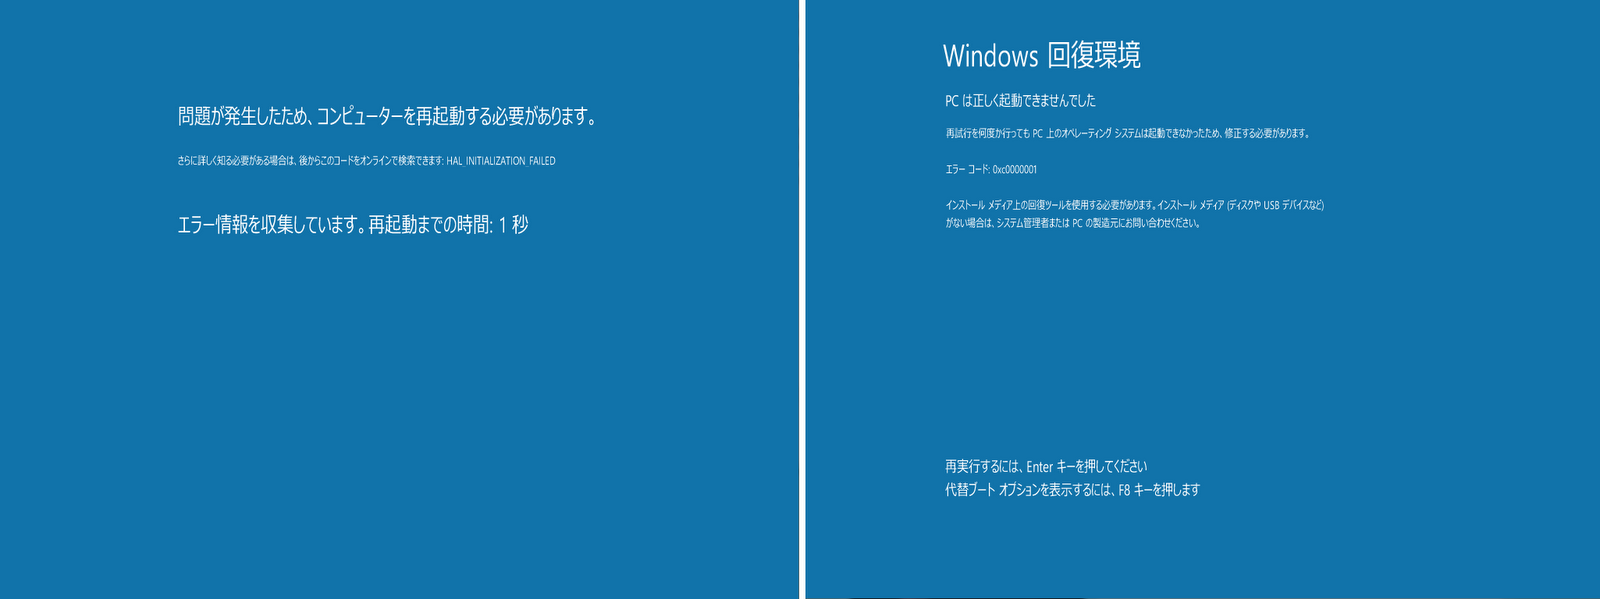 山市良のえぬなんとかわーるど Computerworld 記事更新 Windows 8 Consumer Preview のブルースクリーン